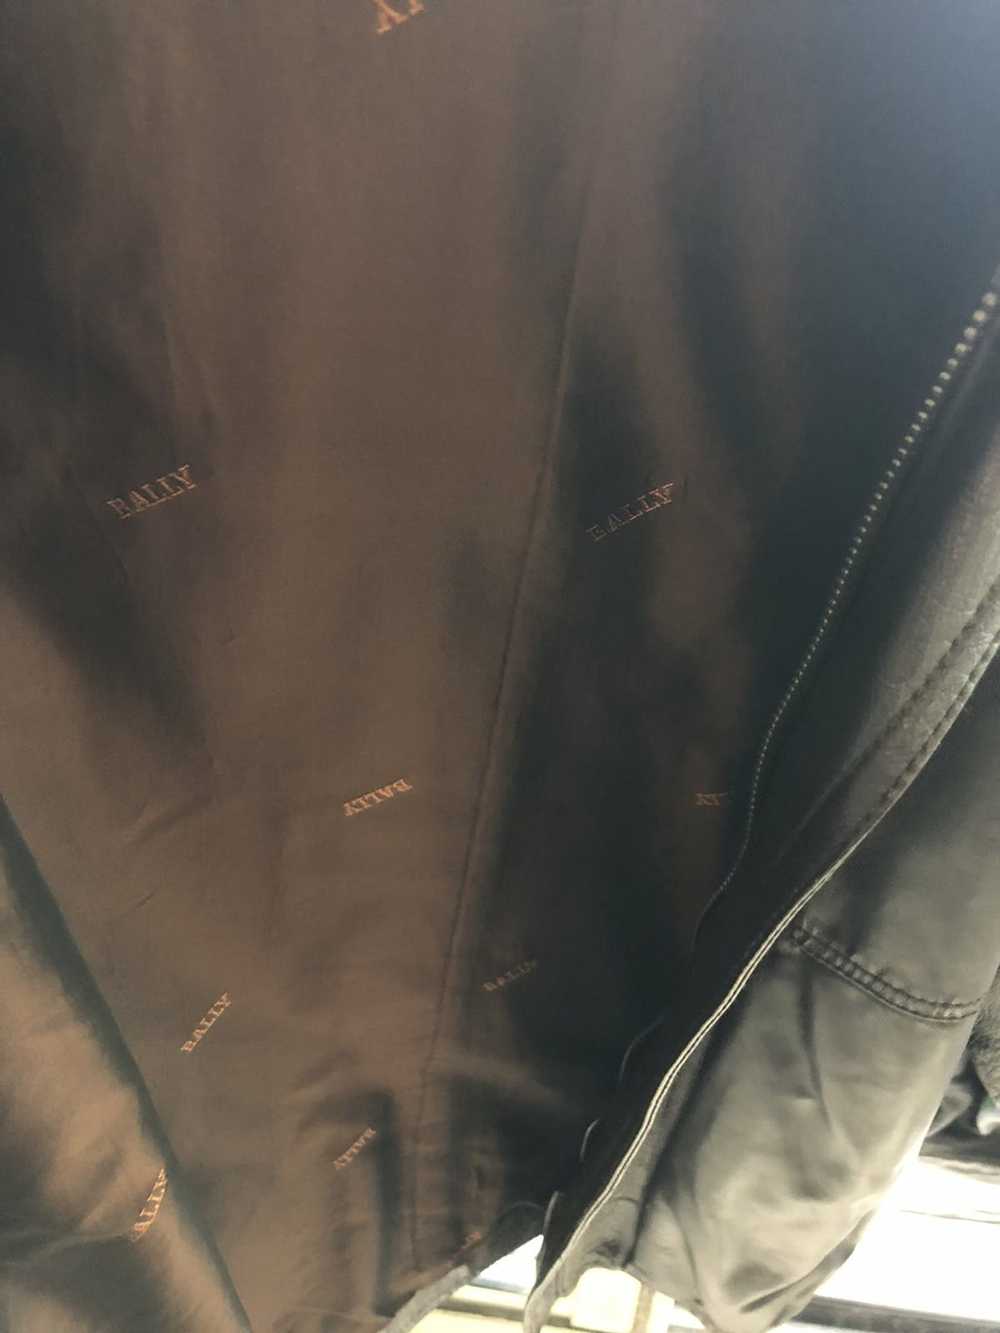 Bally Bally leather jacket - image 3